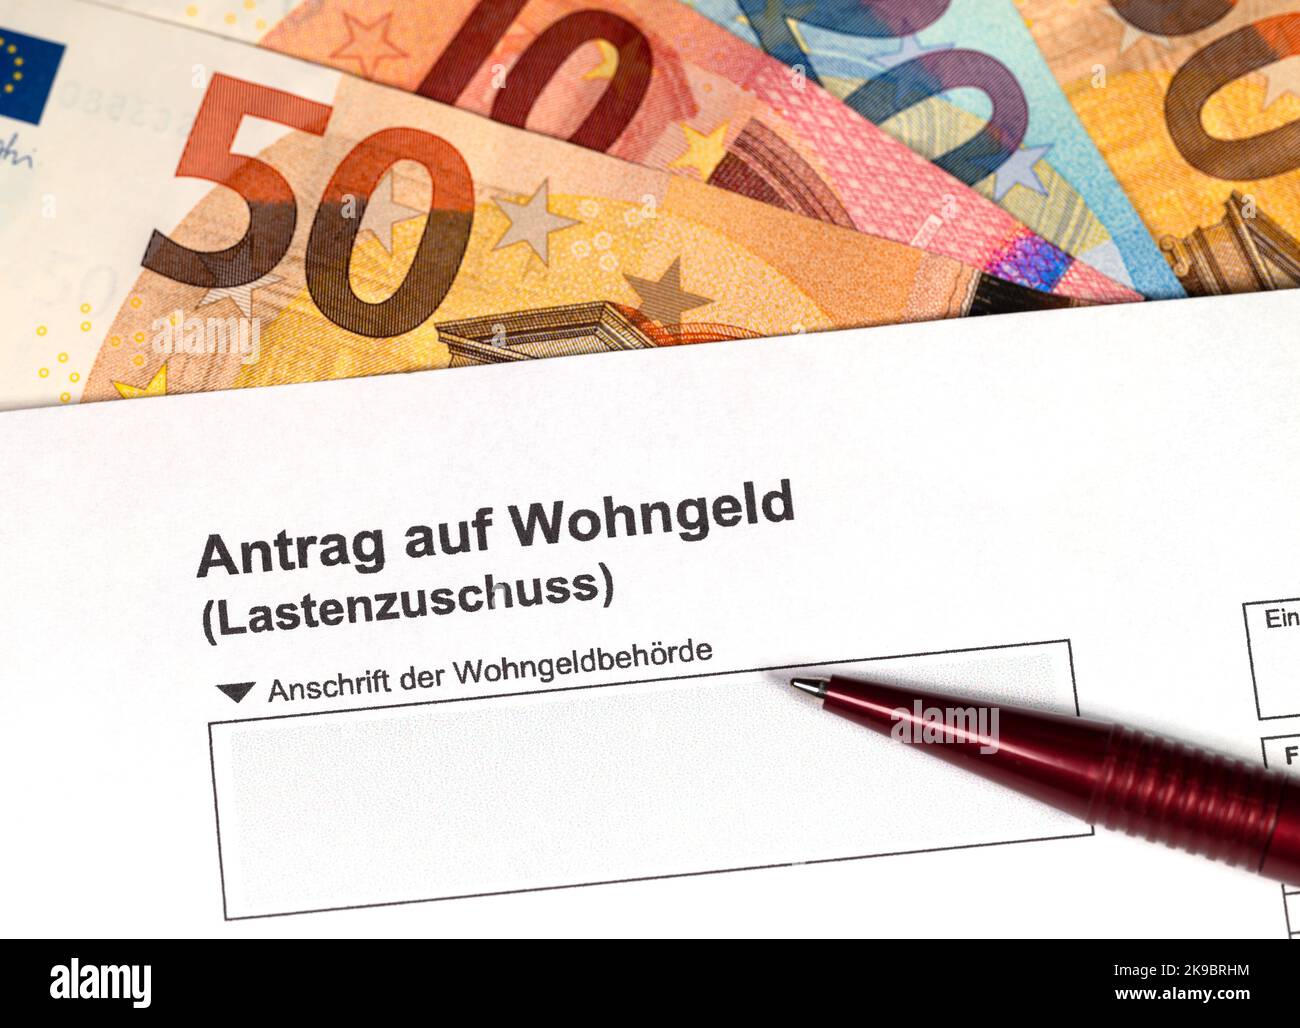 Formulaire « Antrag auf Wohngeld, Lastenzuschuss », traduction « demande d'allocation de logement, subvention de charge » Banque D'Images